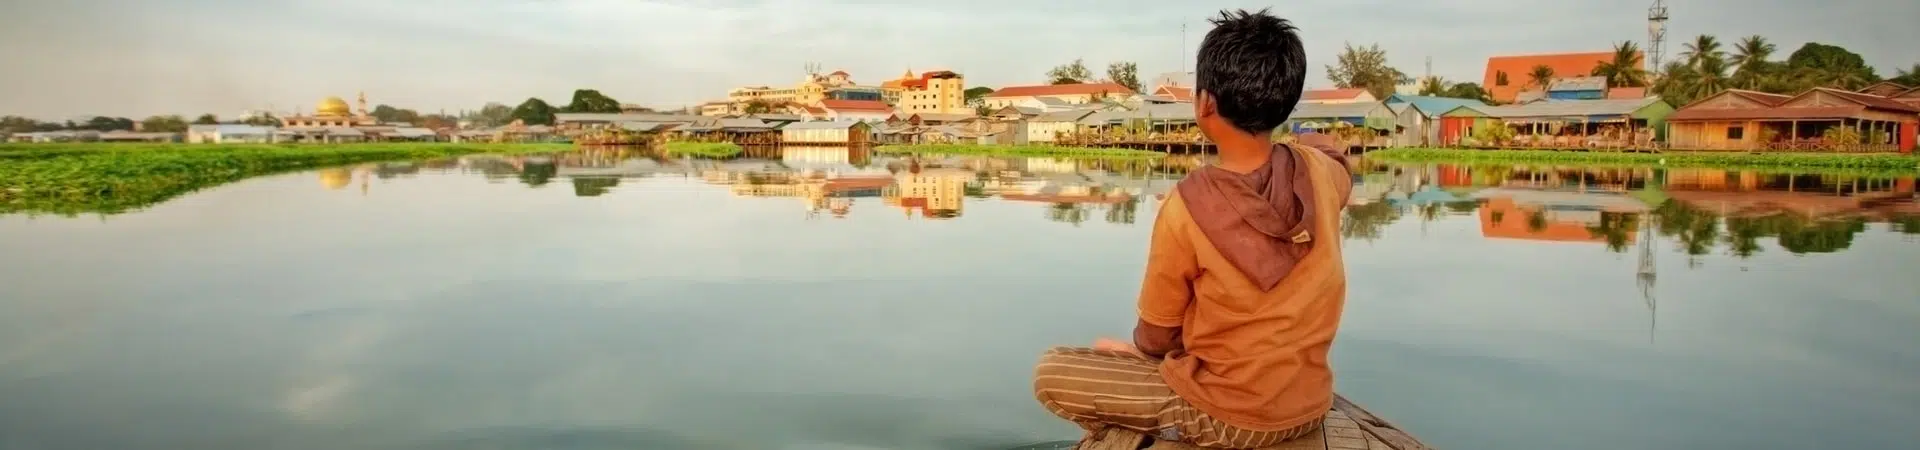 Cestovanie Kambodžou udržateľnou cestou